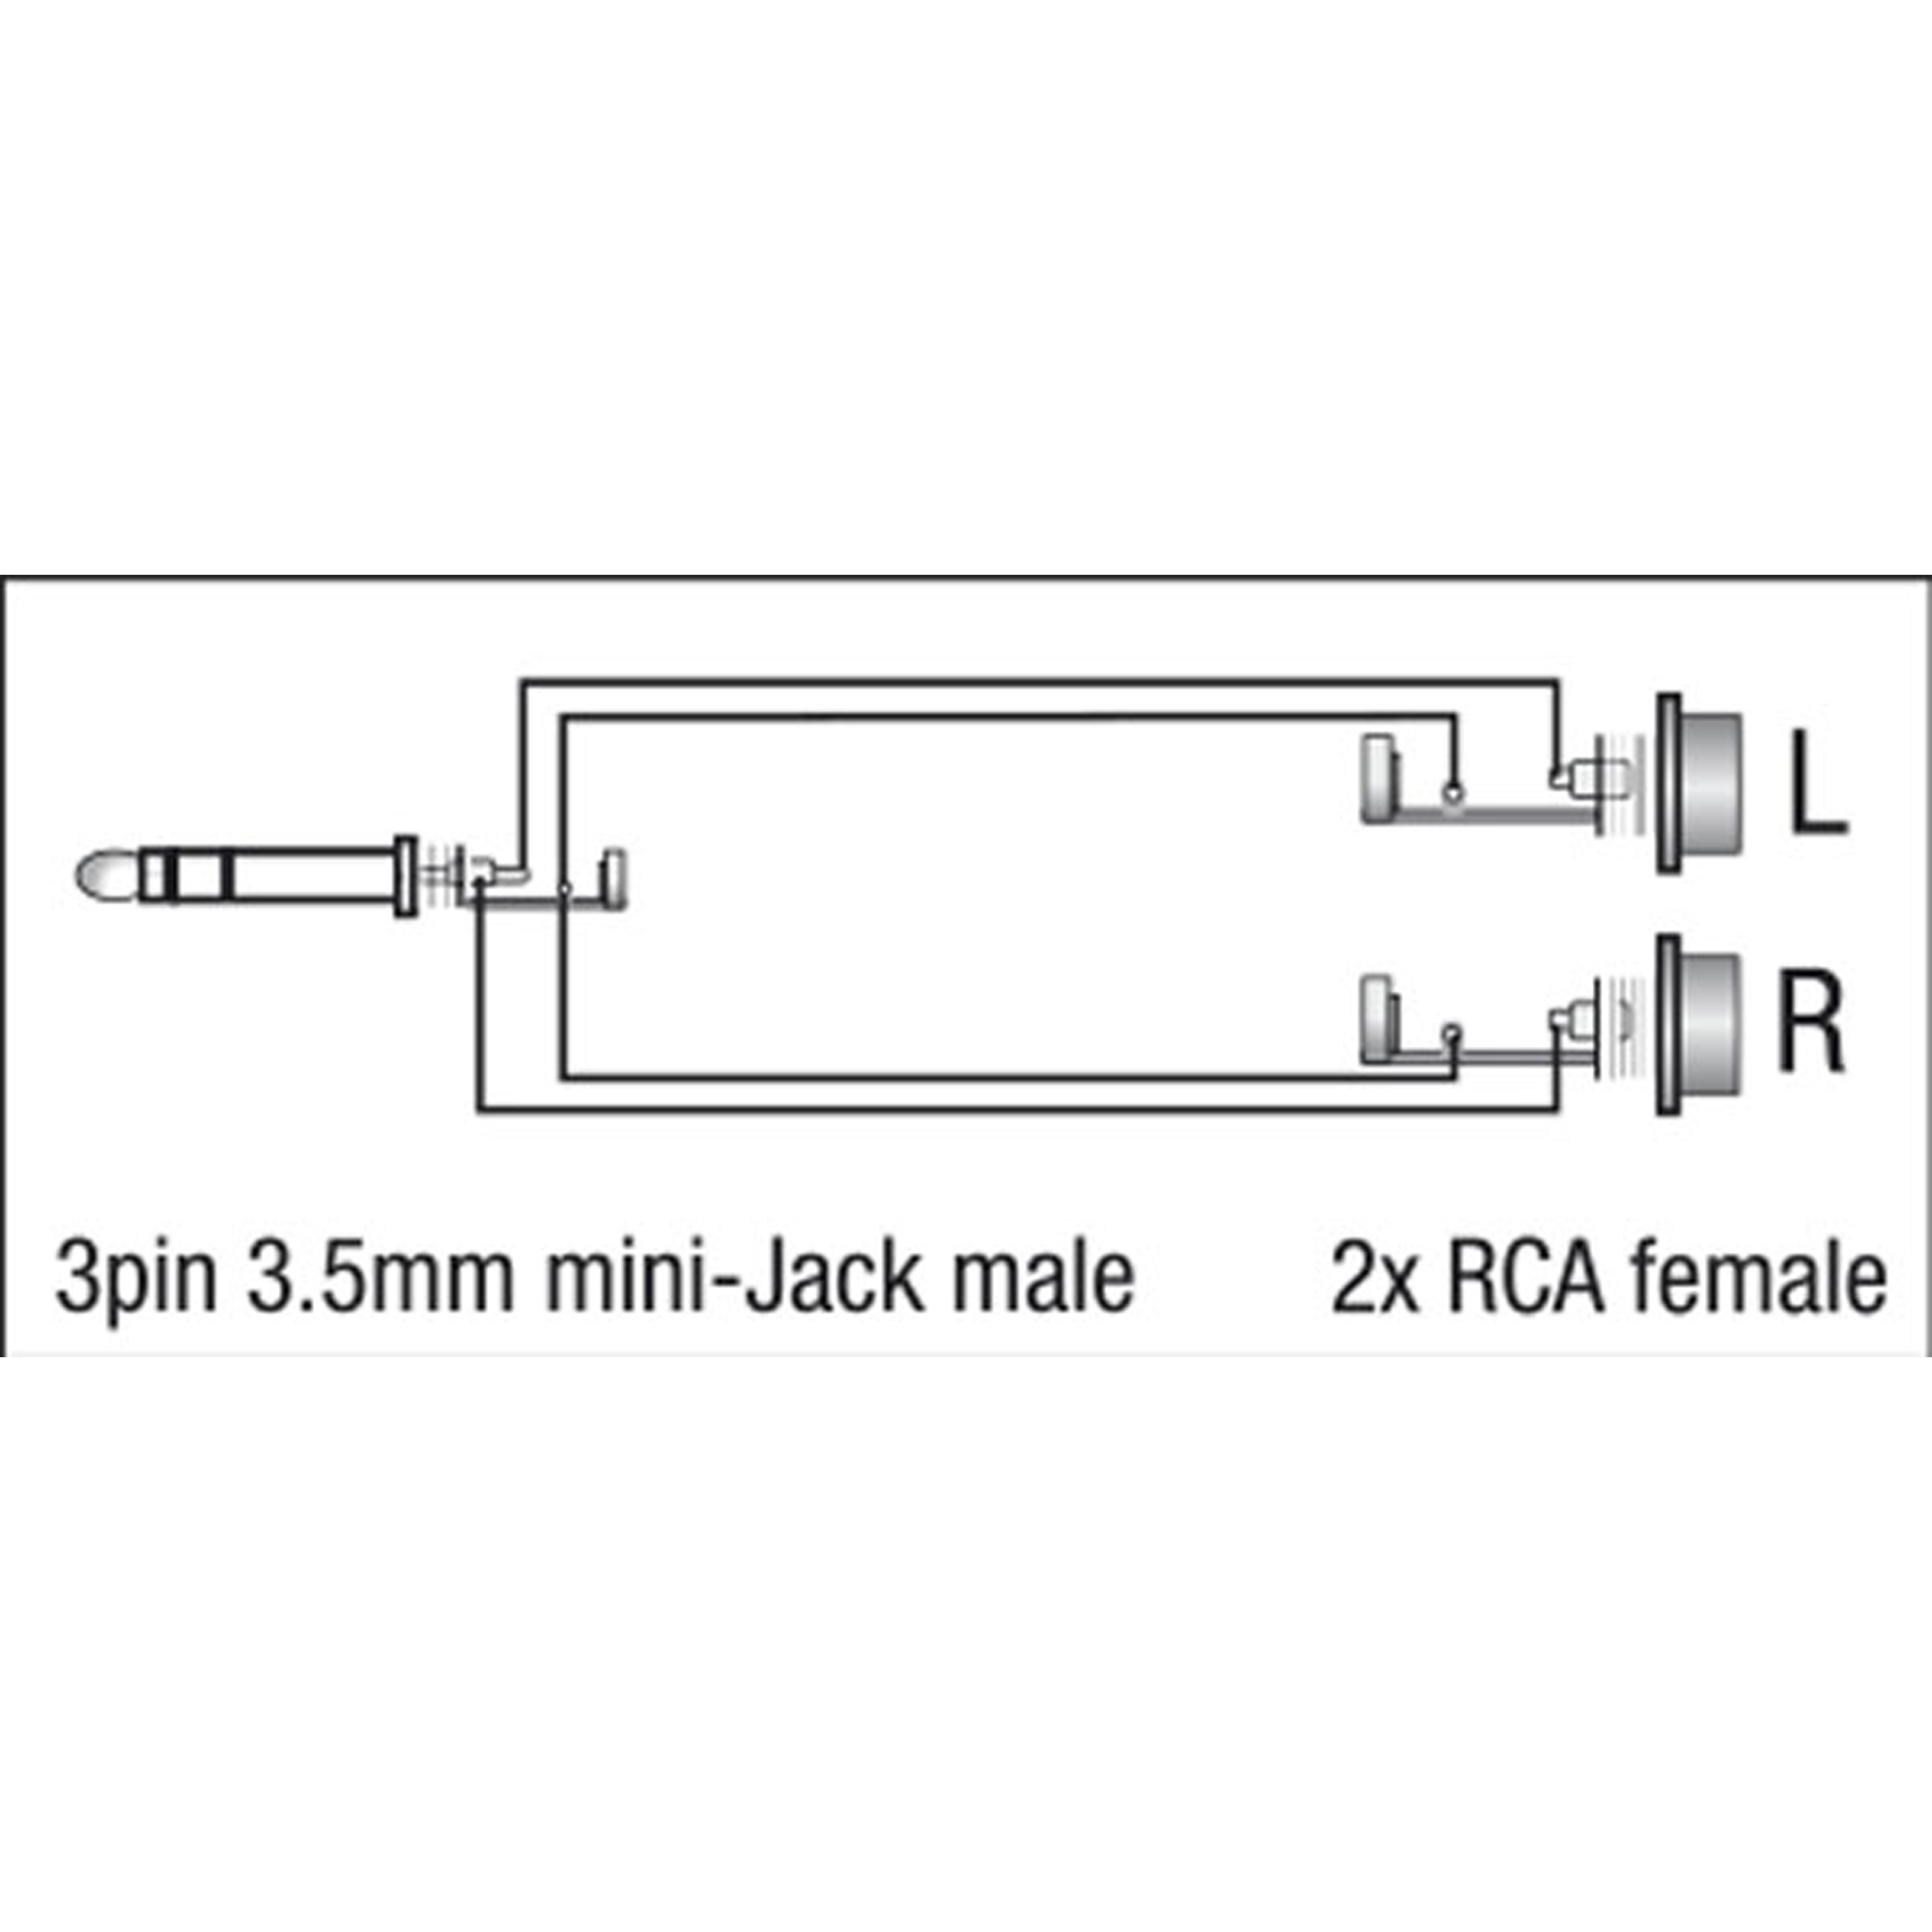 DAP XGA17 - mini-jack/M stereo to 2x RCA/F 